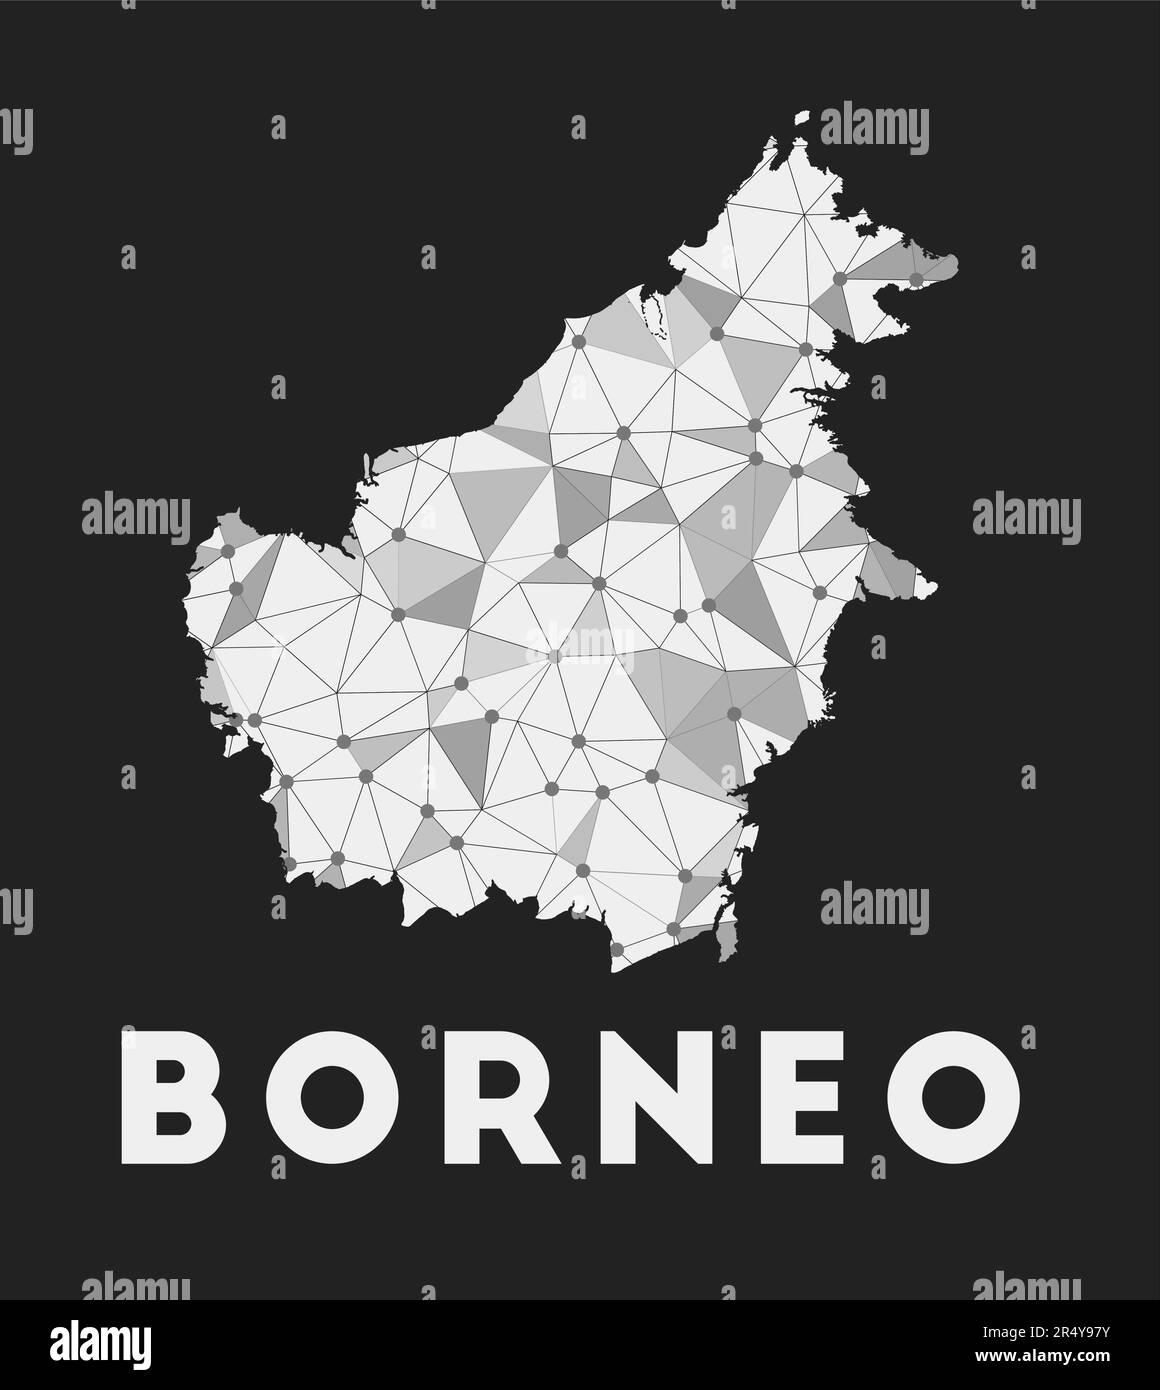 Borneo - mappa della rete di comunicazione dell'isola. Borneo design geometrico alla moda su sfondo scuro. Tecnologia, internet, rete, telecomunicazioni conc Illustrazione Vettoriale